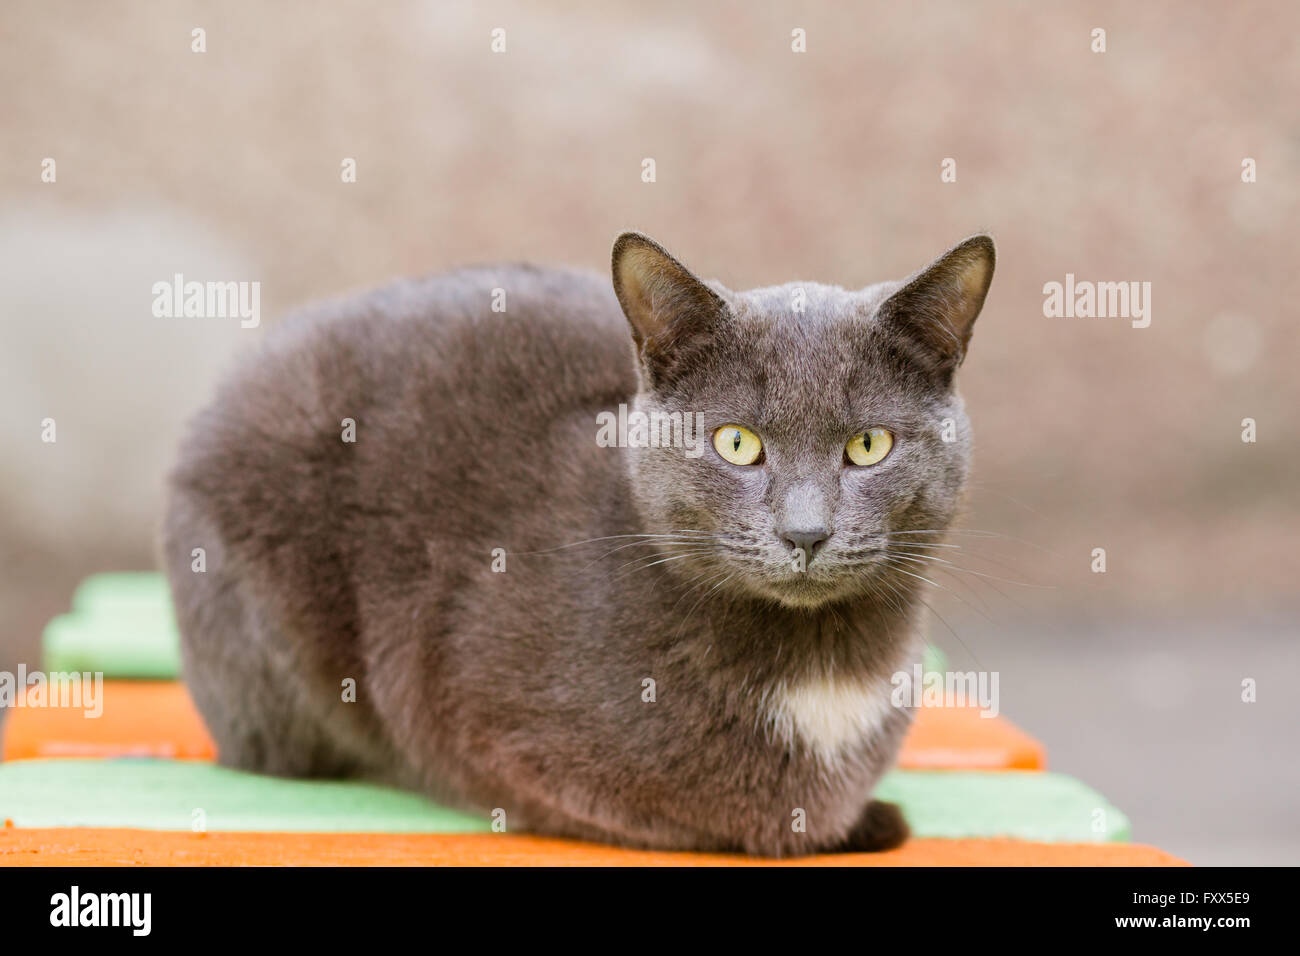 Portrait de chat gris indifférent looking at camera Banque D'Images